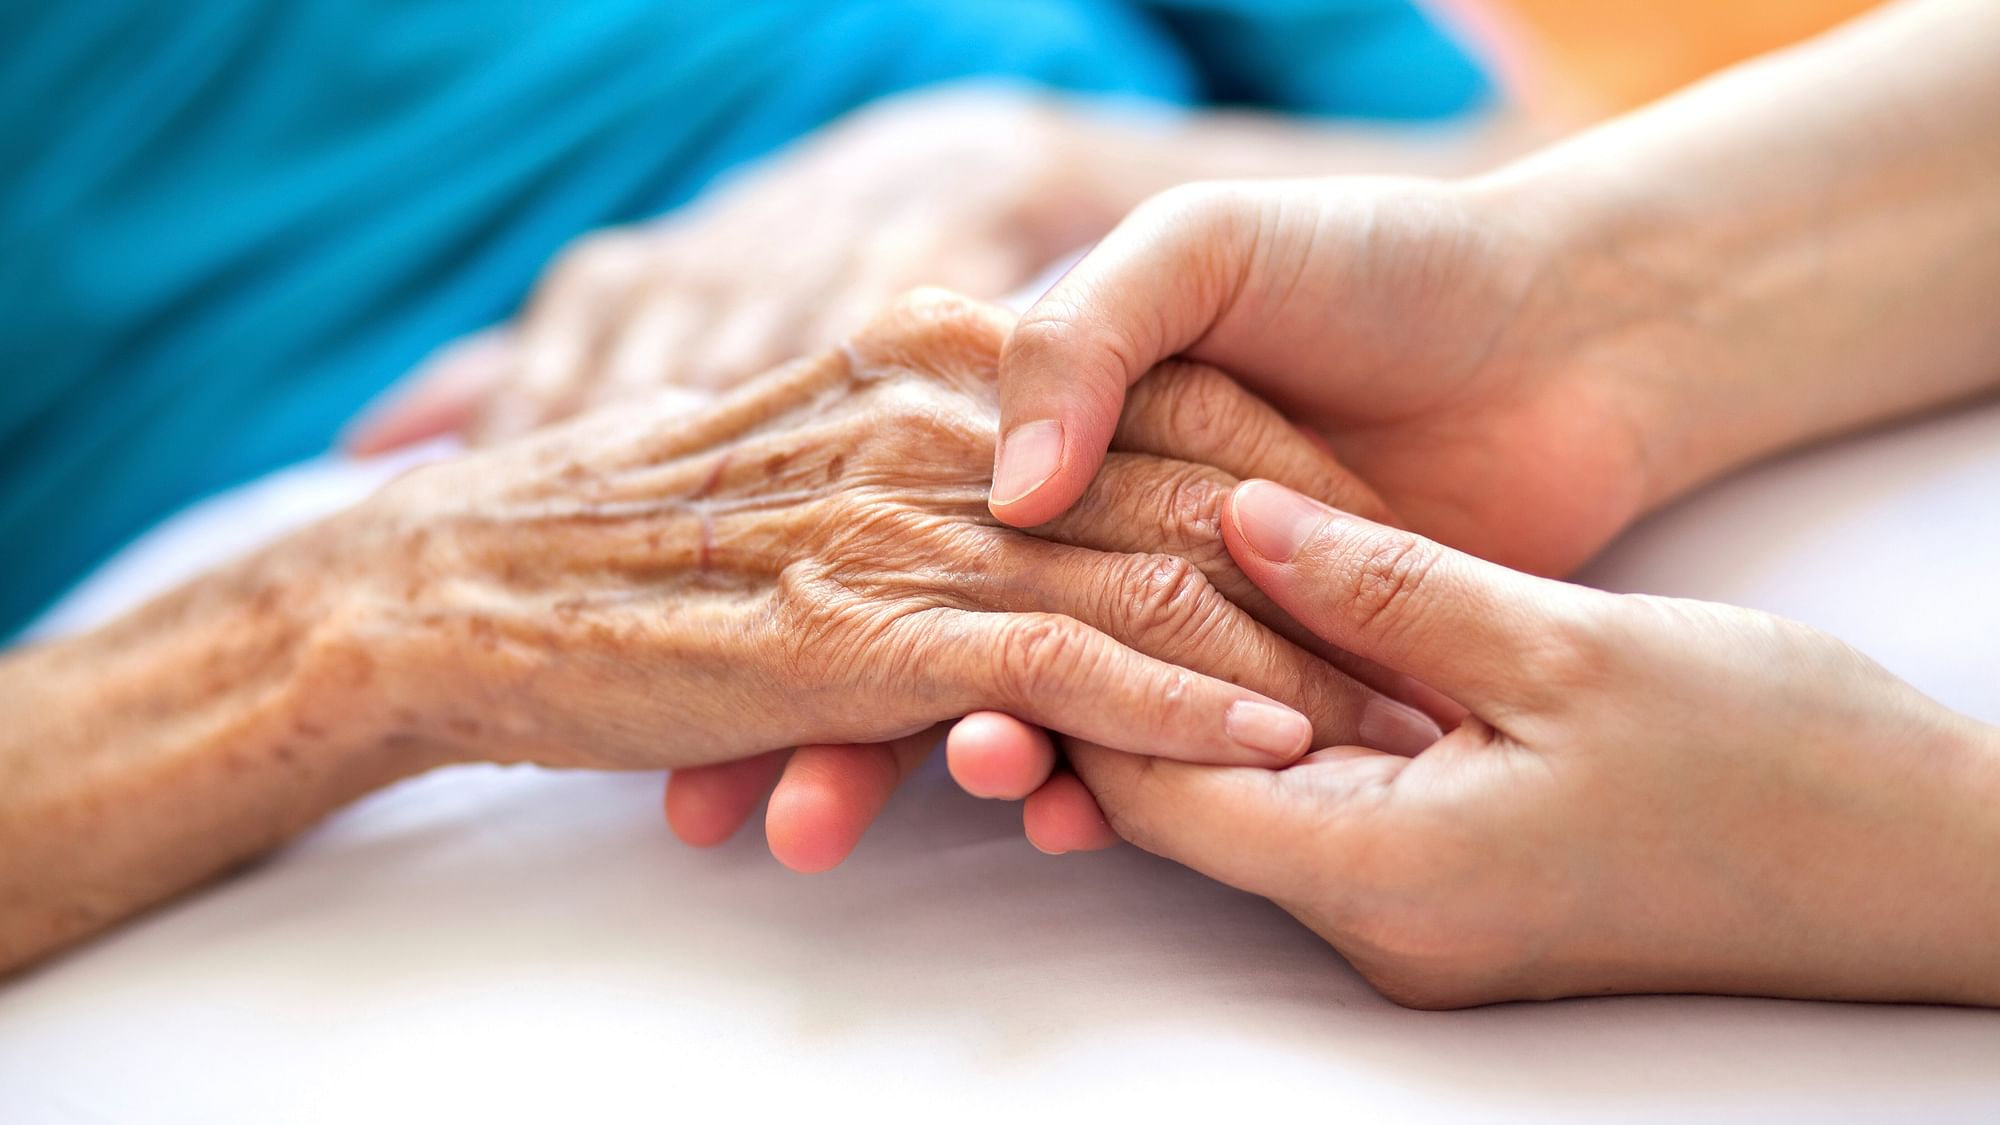 <div class="paragraphs"><p>Winter Care Tips For Seniors: ठंड में घर के बुजुर्गों को बीमार पड़ने से बचाने के लिए क्या करें?</p></div>